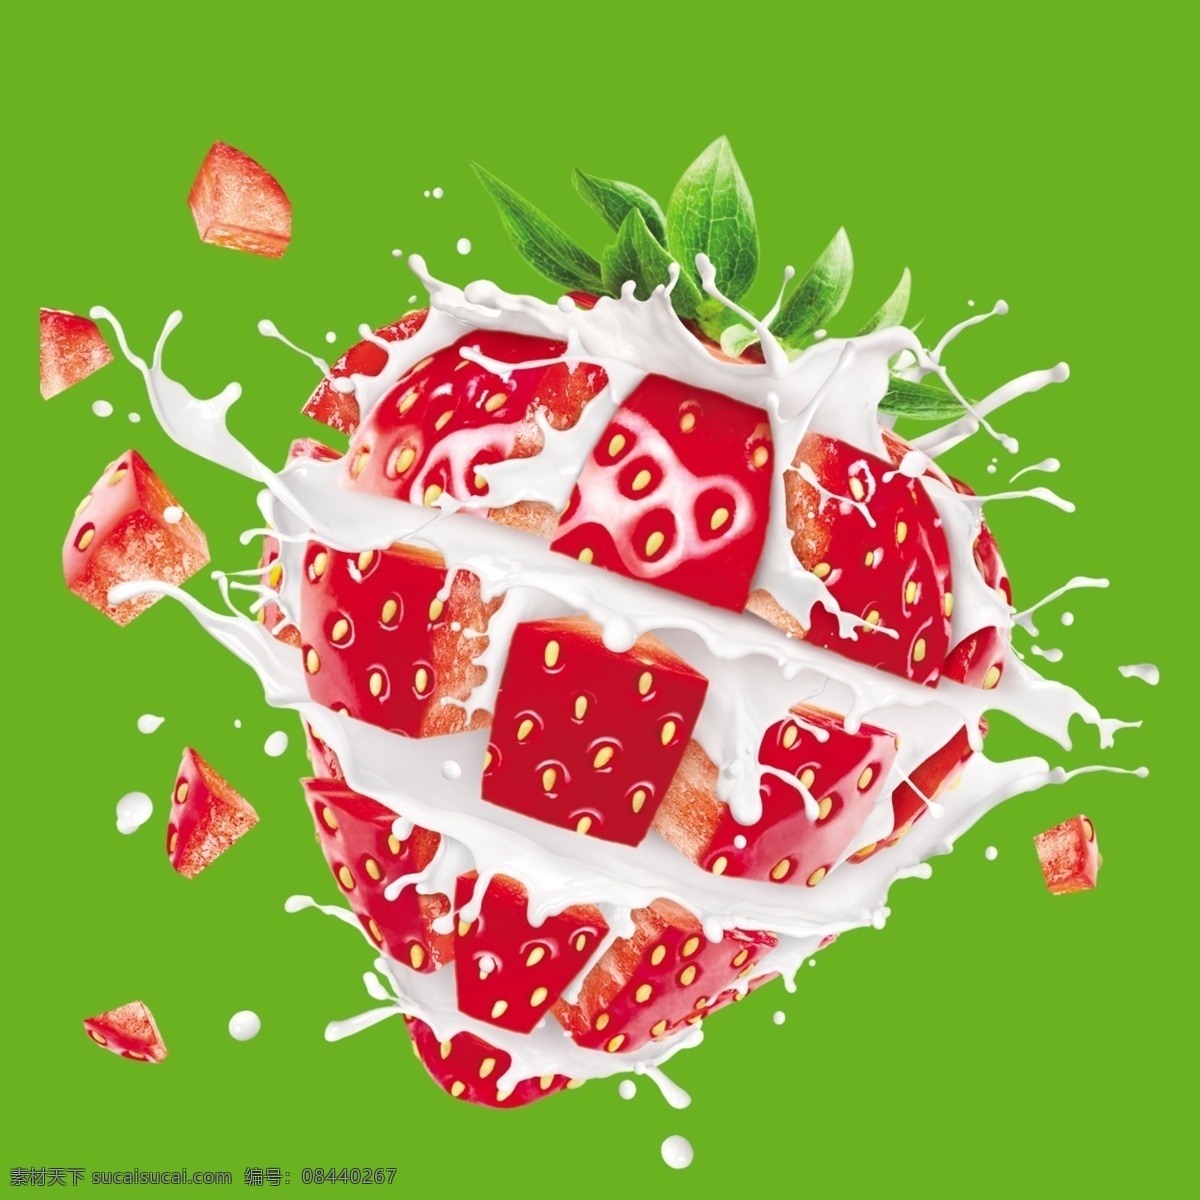 牛奶草莓图片 水果 新鲜 牛奶 创意 装饰 草莓 草莓图片 草莓果实 草莓分层图 草莓素材 草莓作品 红色的草莓 水果类 生活百科 餐饮美食